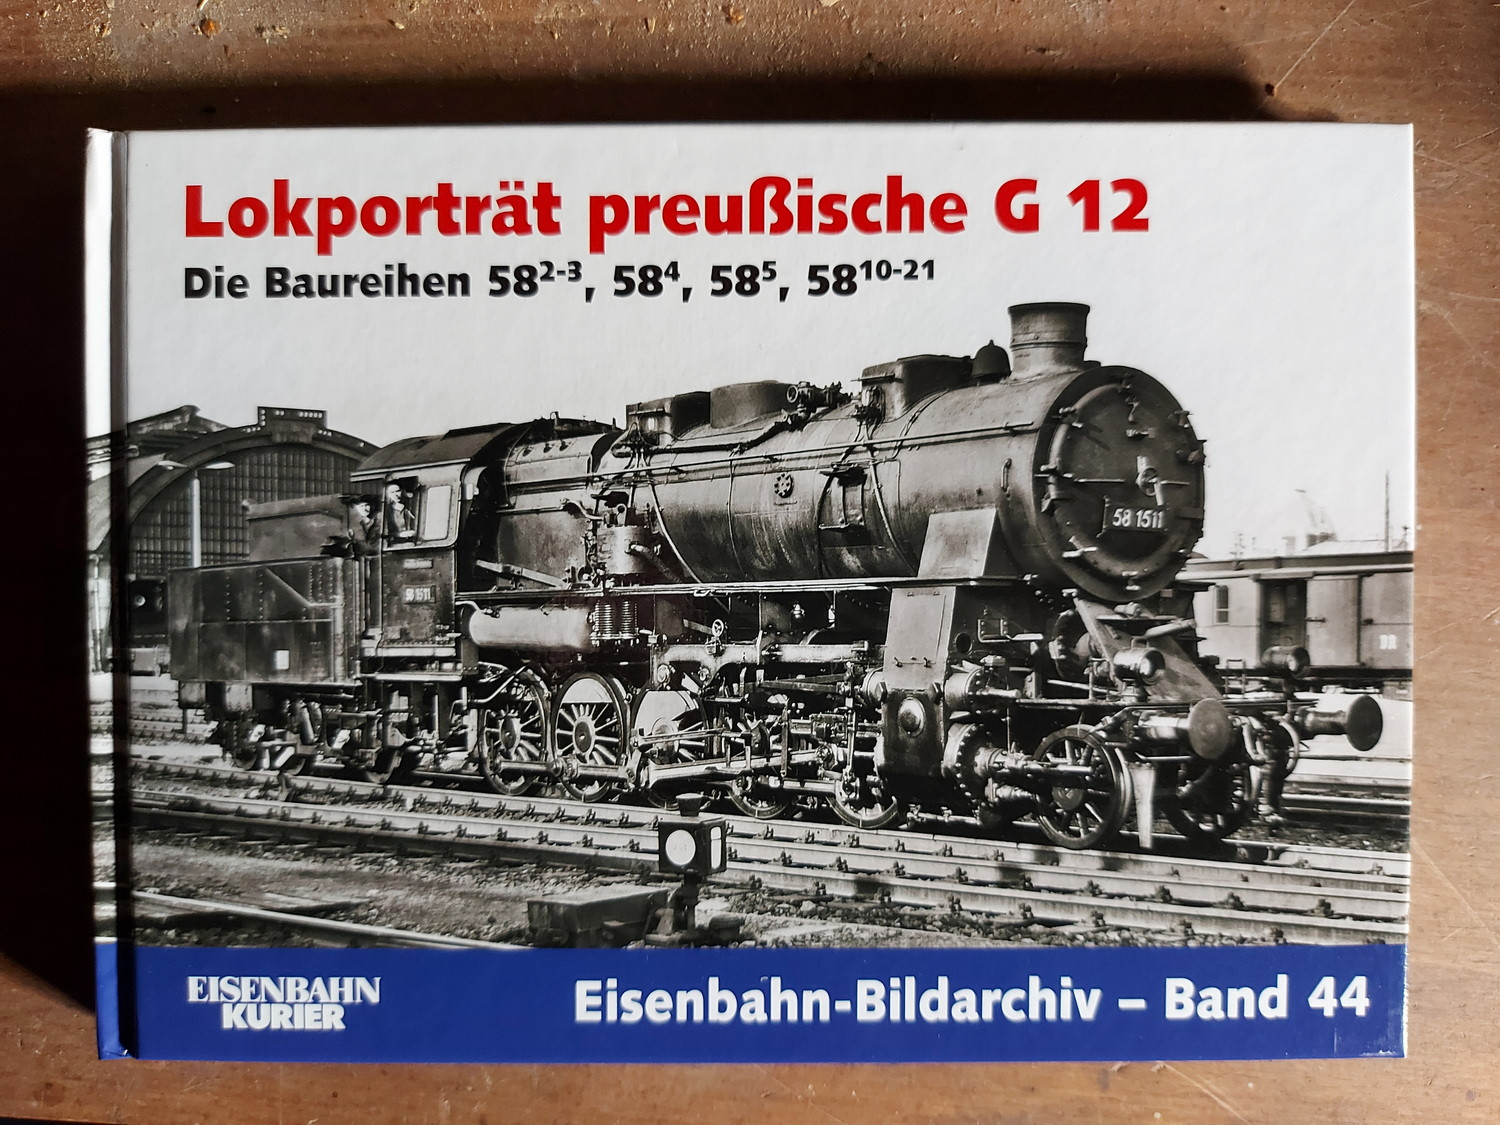 Lokporträt preußische G 12, Die Baureihen 58.2-3, 57.4, 58.10-21, Eisenbahn-Bildarchiv Band 44